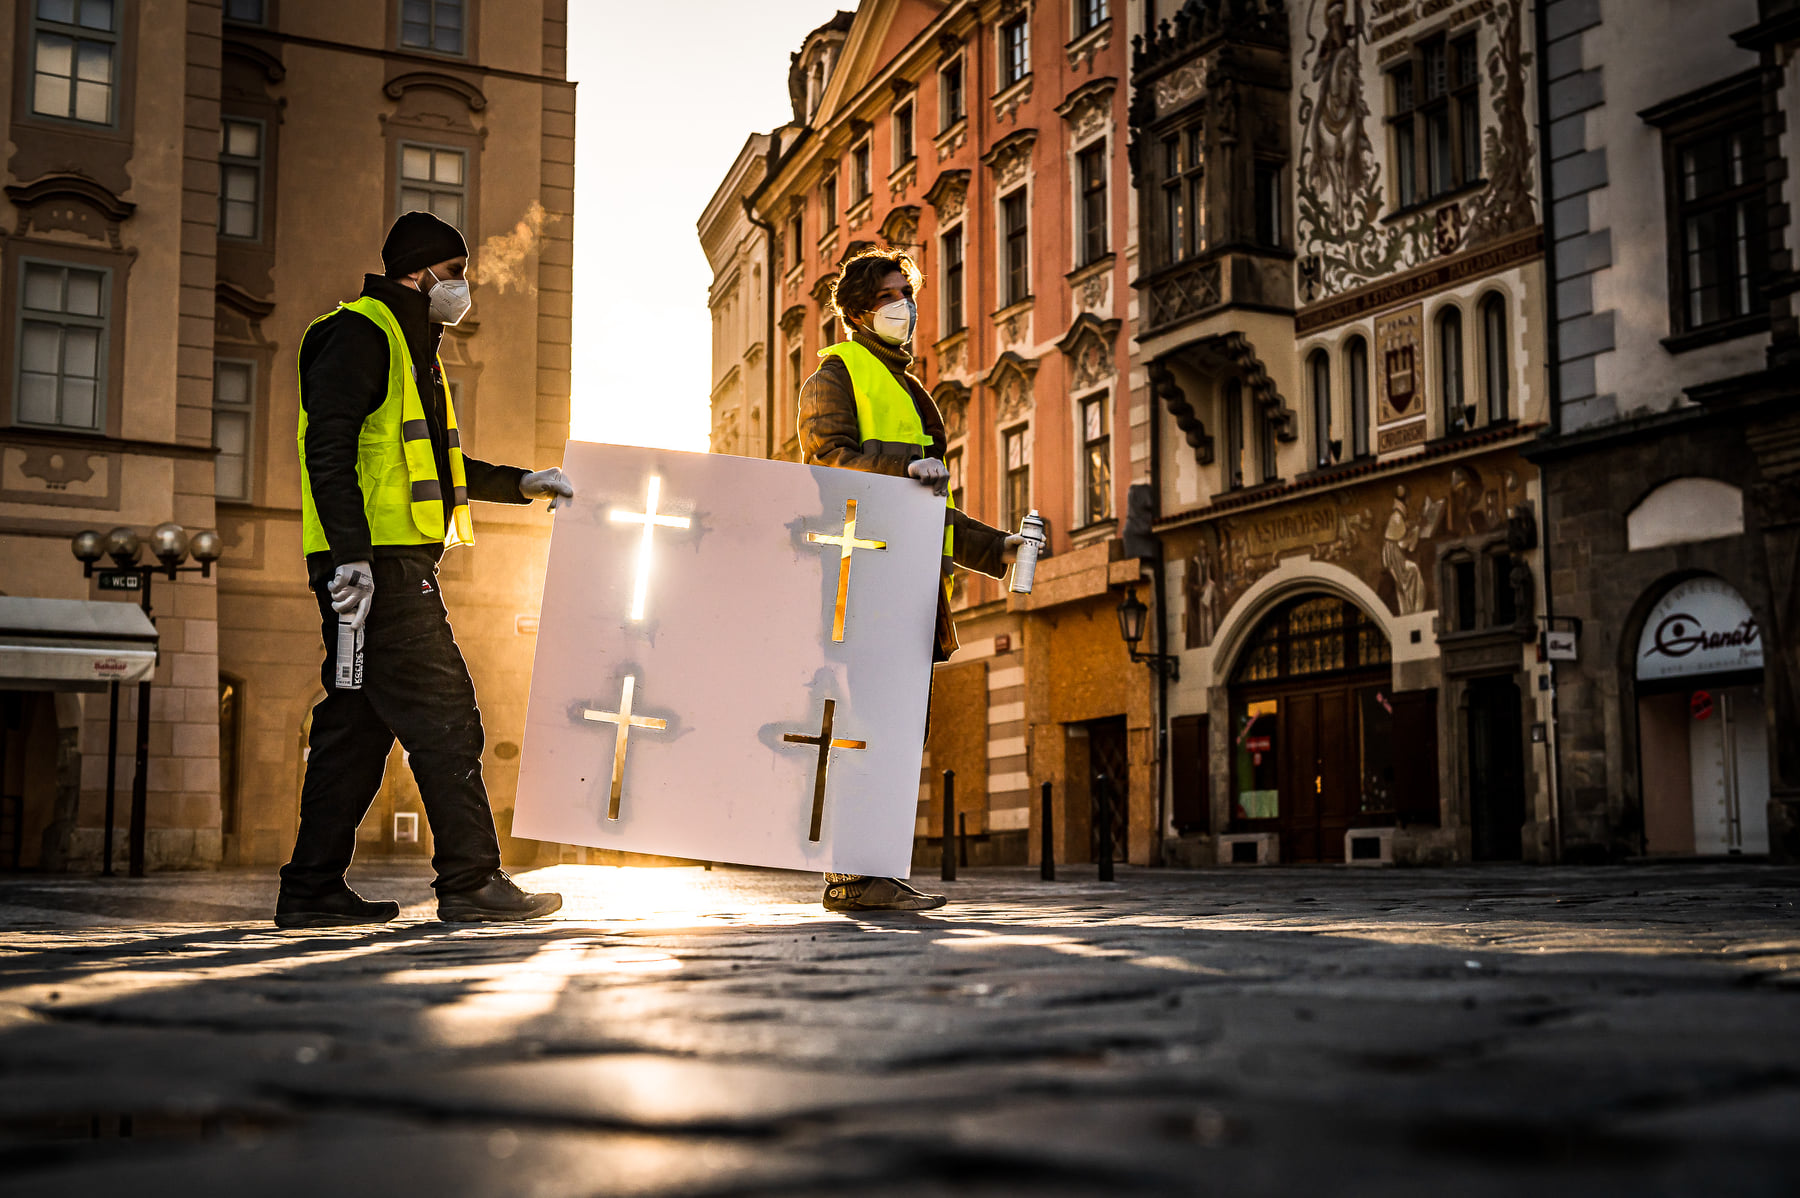 Napsali o nás: Nejzajímavější reportáže o křížích na Staroměstském náměstí